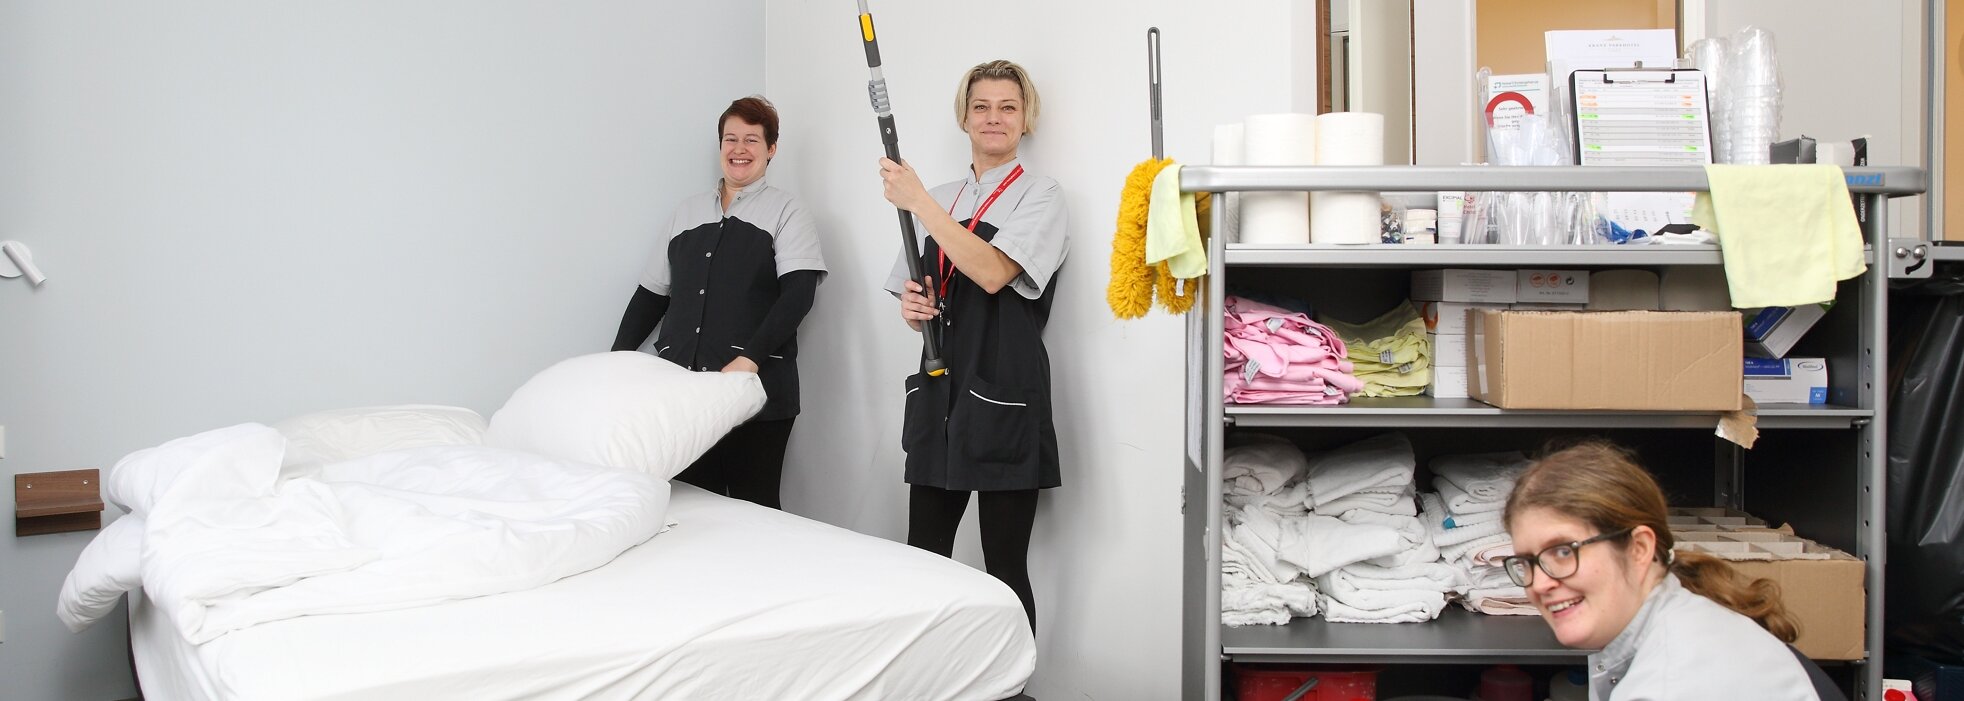 Drei gut gelaunte Mitarbeiterinnen posieren während der Reinigungsarbeiten in einem Hotelzimmer. Rechts im Bild steht ein großer Rollwagen mit Utensilien.